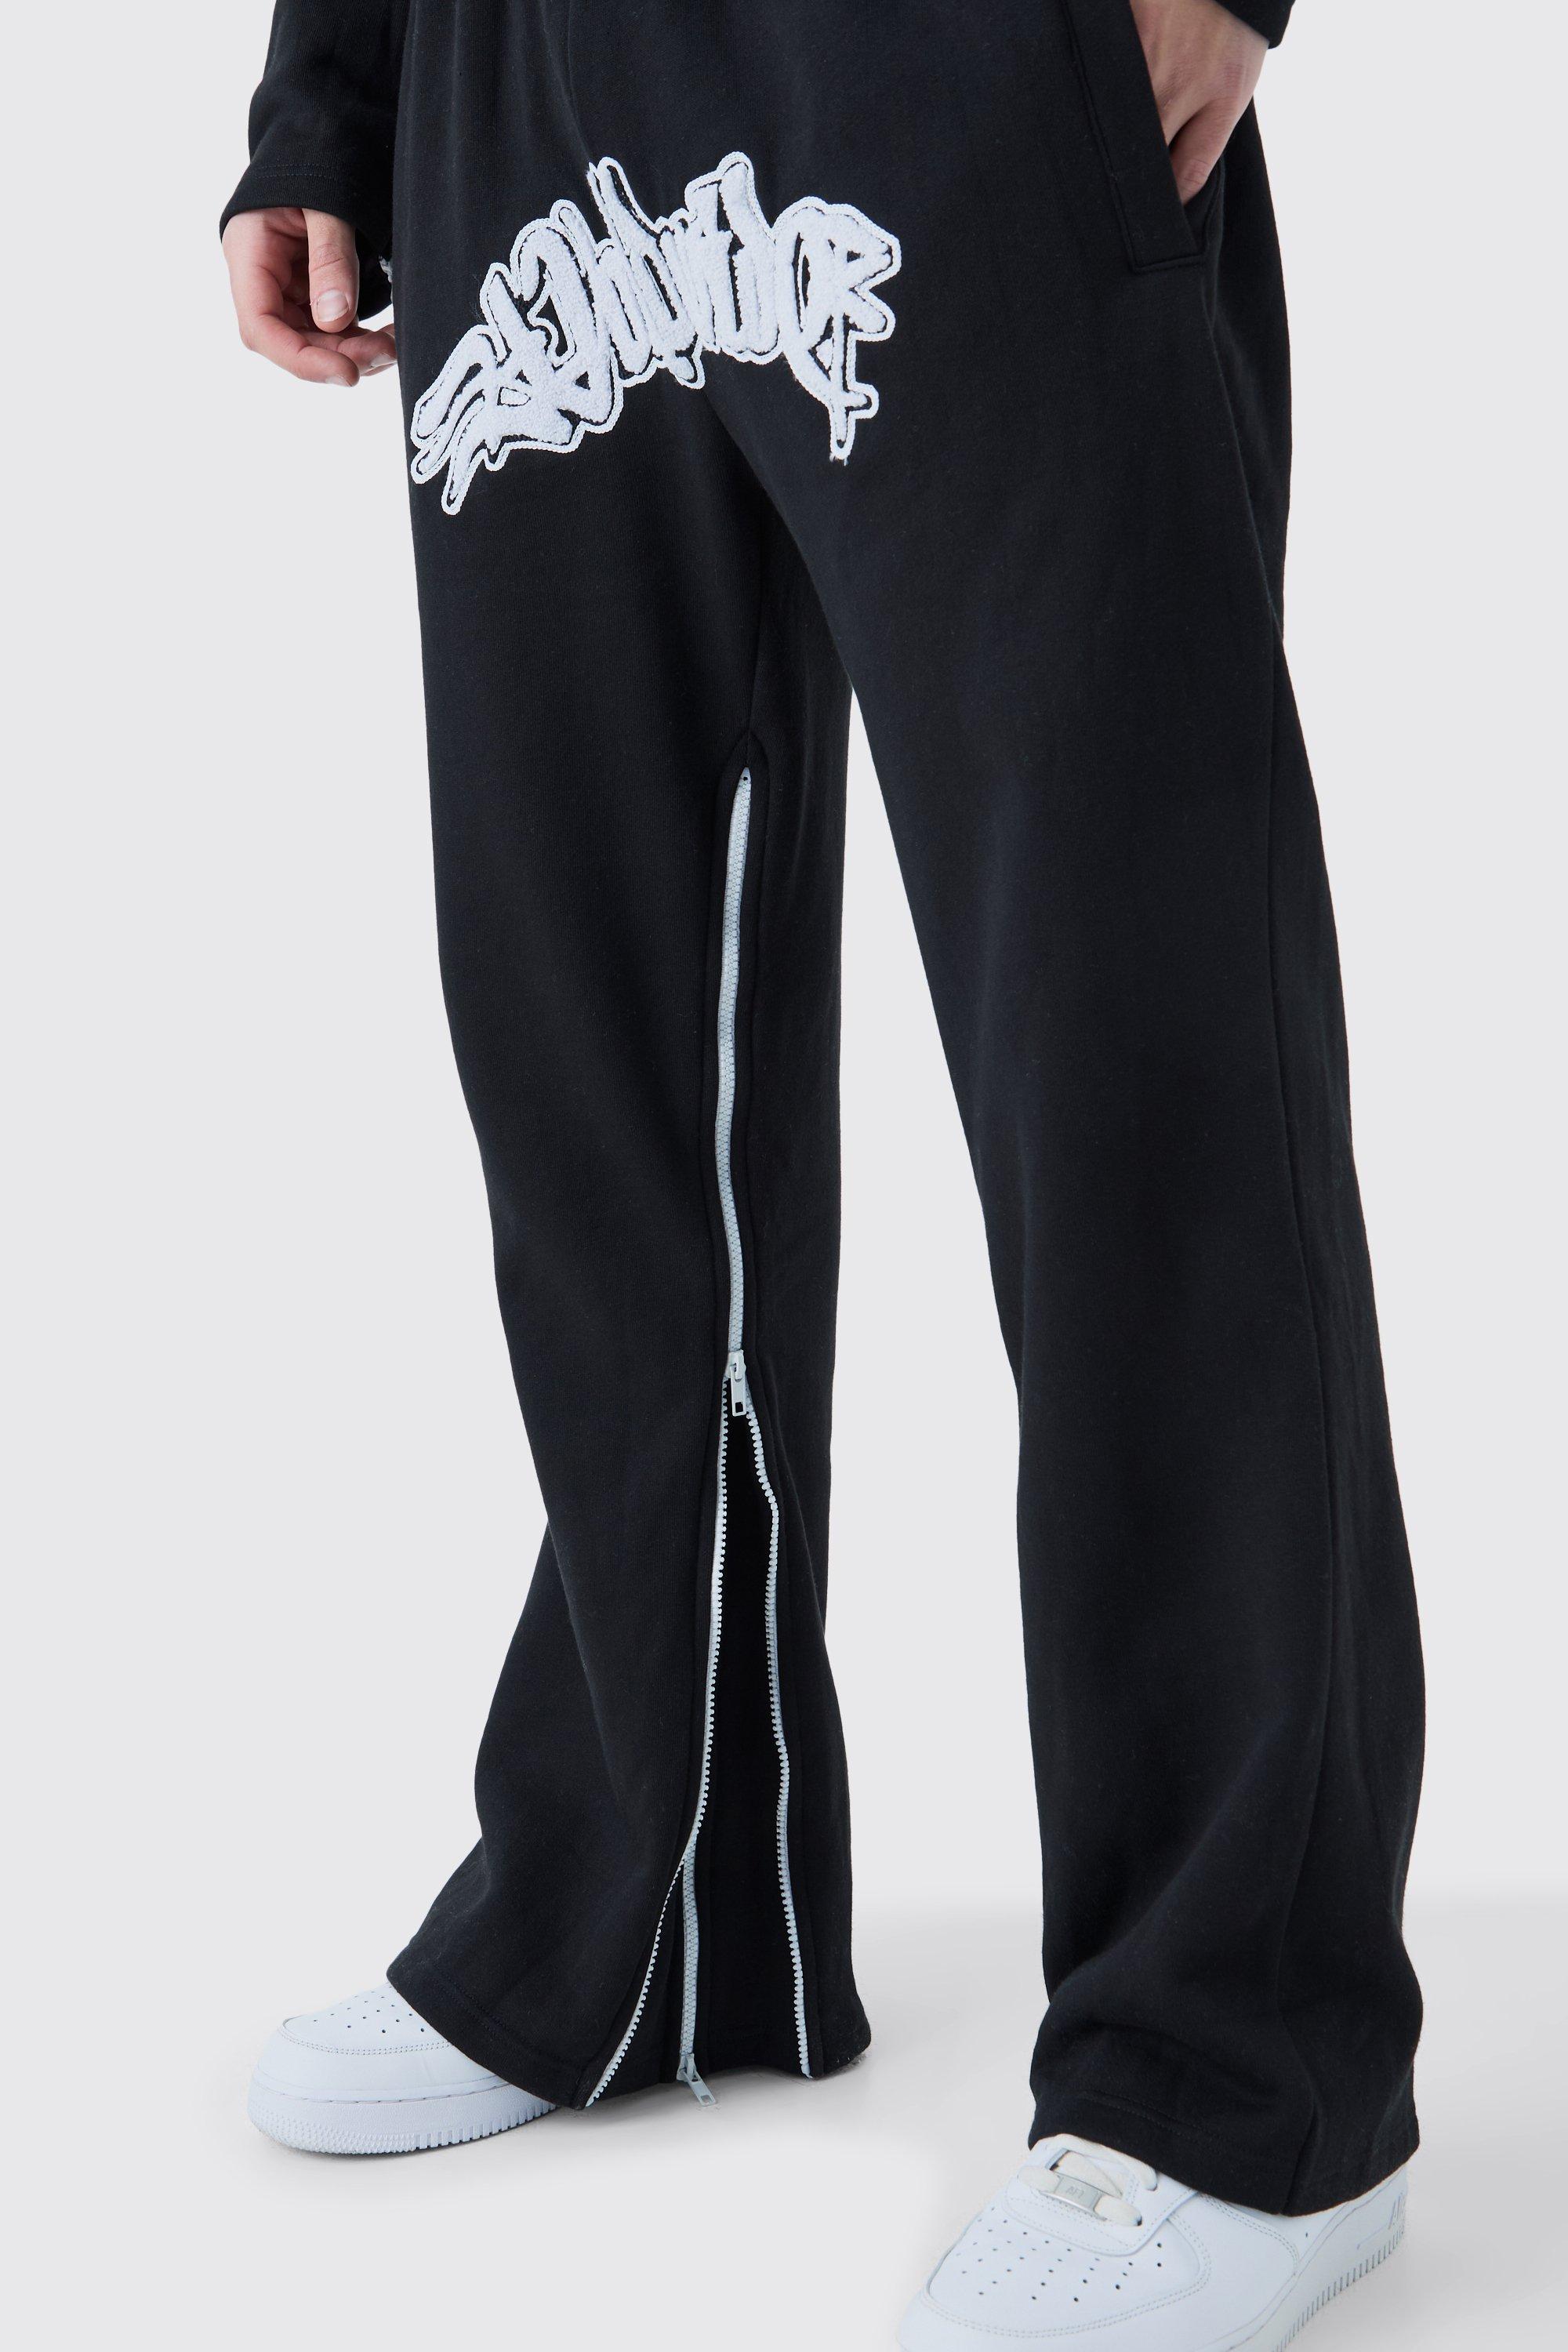 Image of Pantaloni tuta Worldwide con inserti, applique e zip, Nero